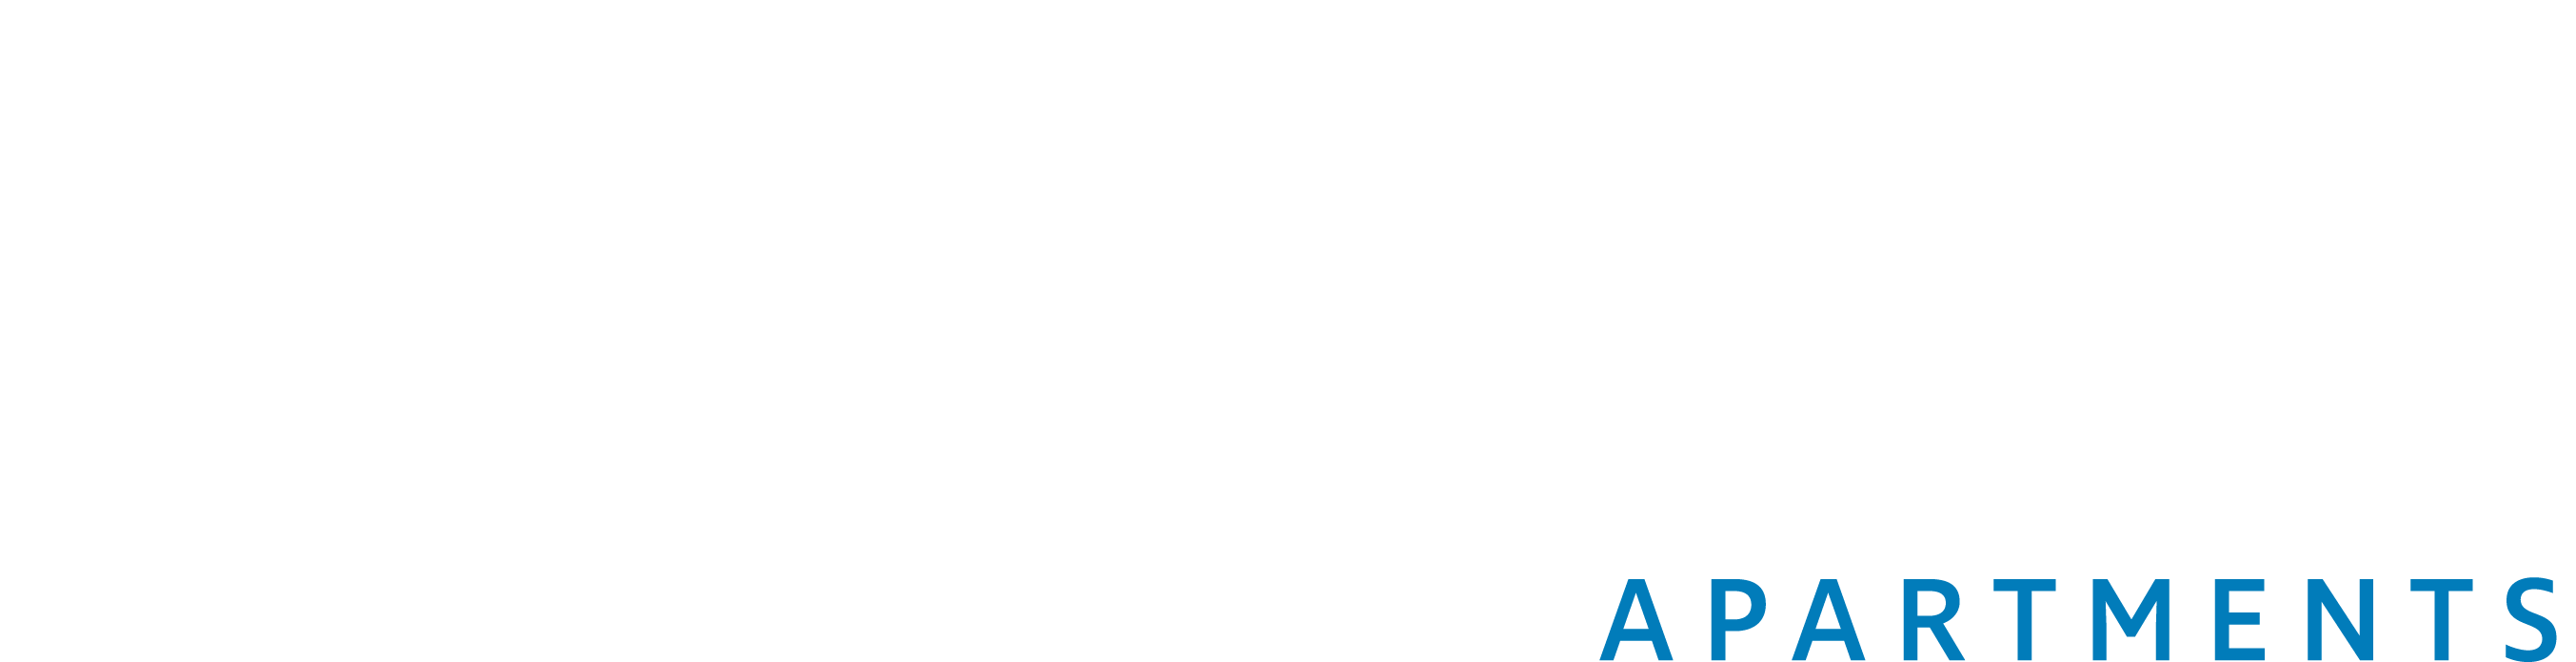 Regency - Regency Club Apartments - Branding